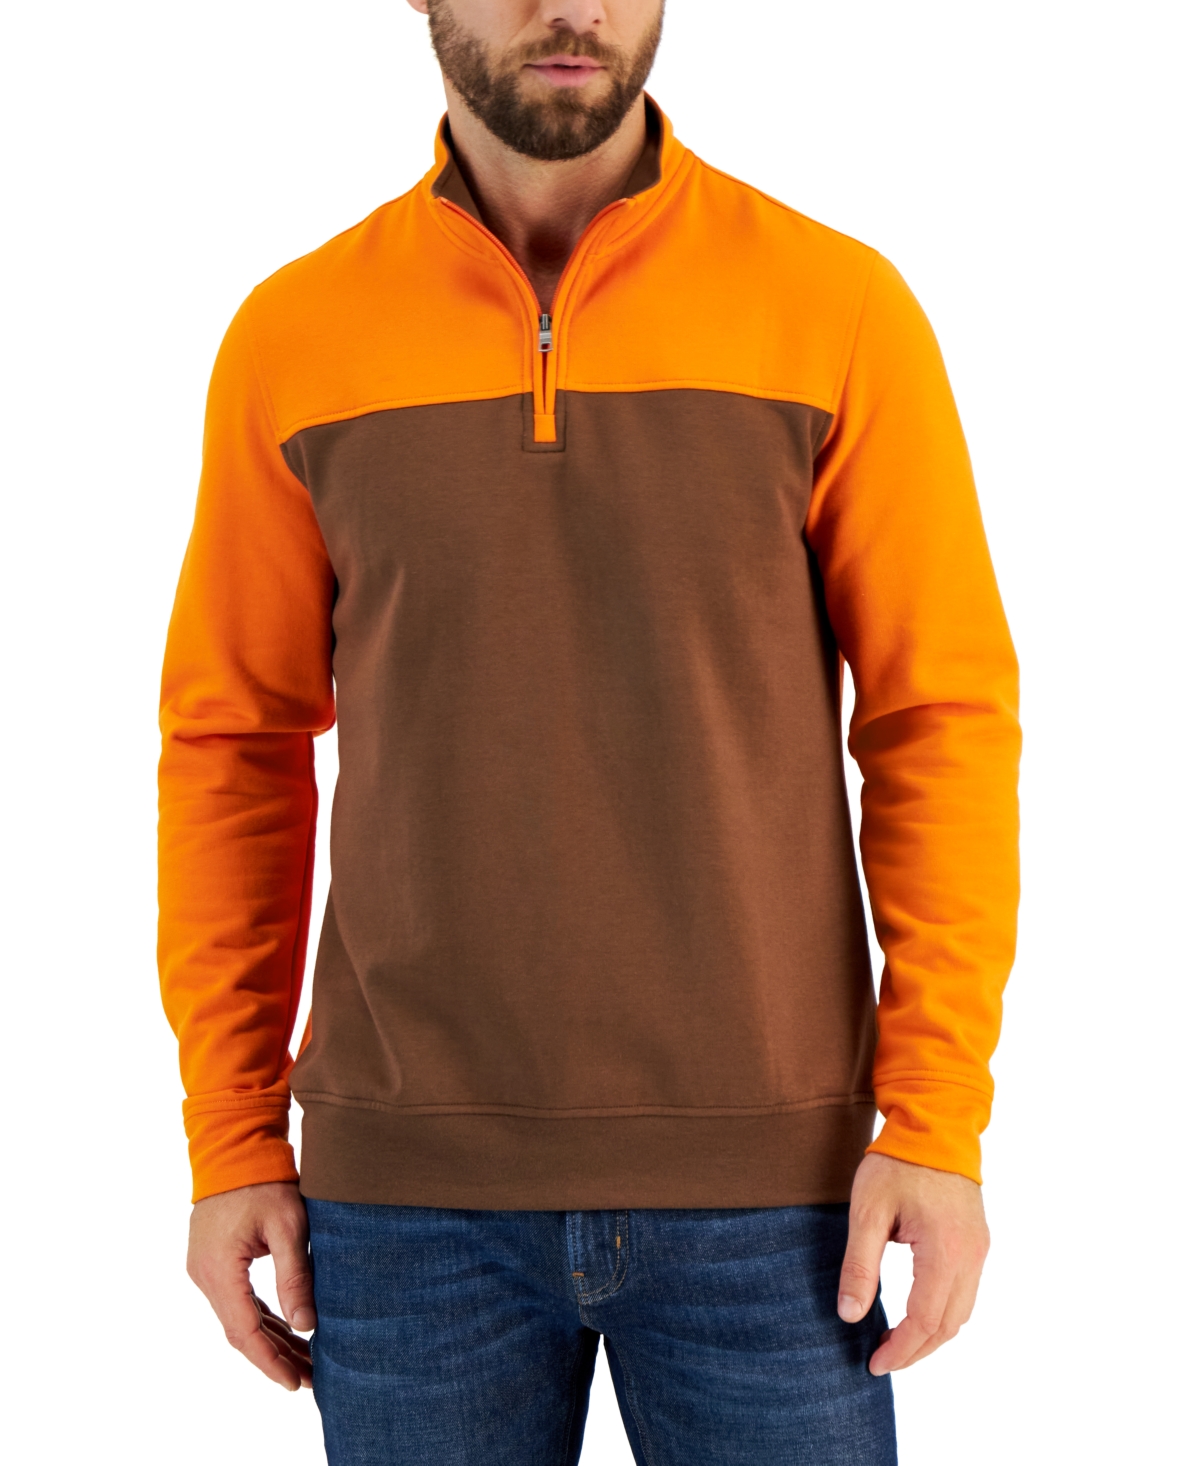 Men's Colorblocked Quarter-Zip Fleece Sweater, Created for Macy's - Campfire Orange